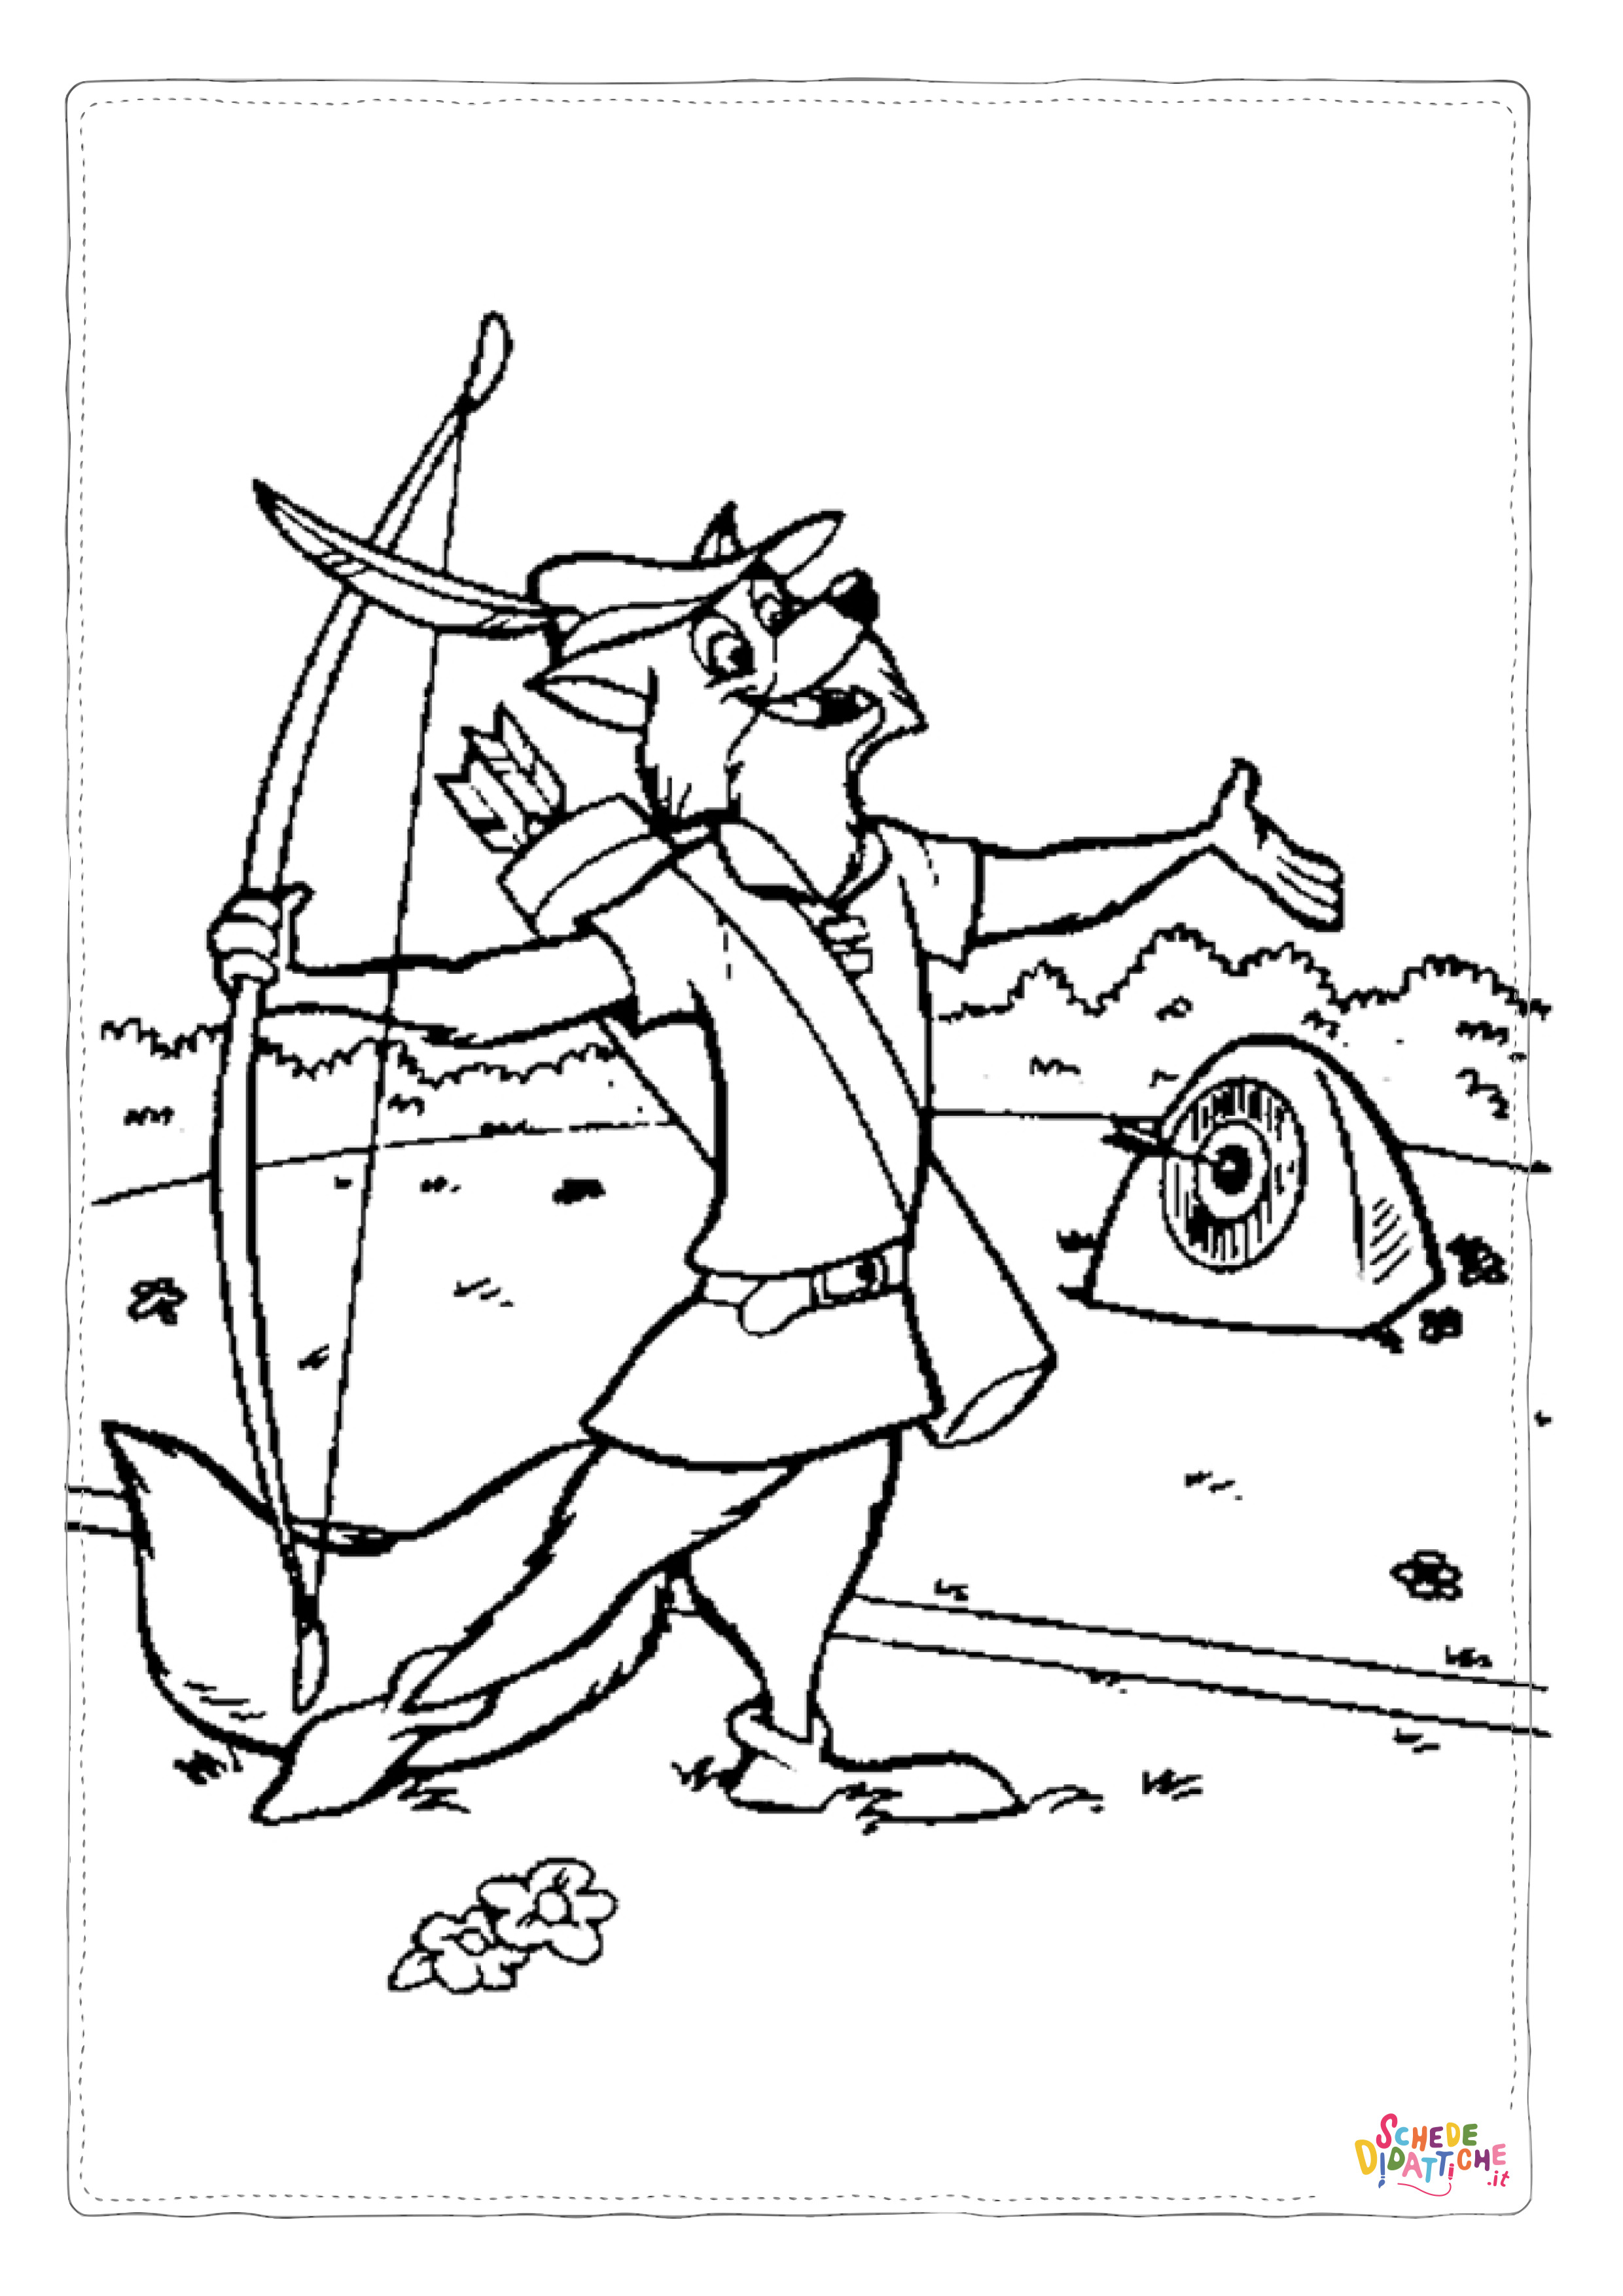 Disegno di Robin Hood da stampare e colorare 1